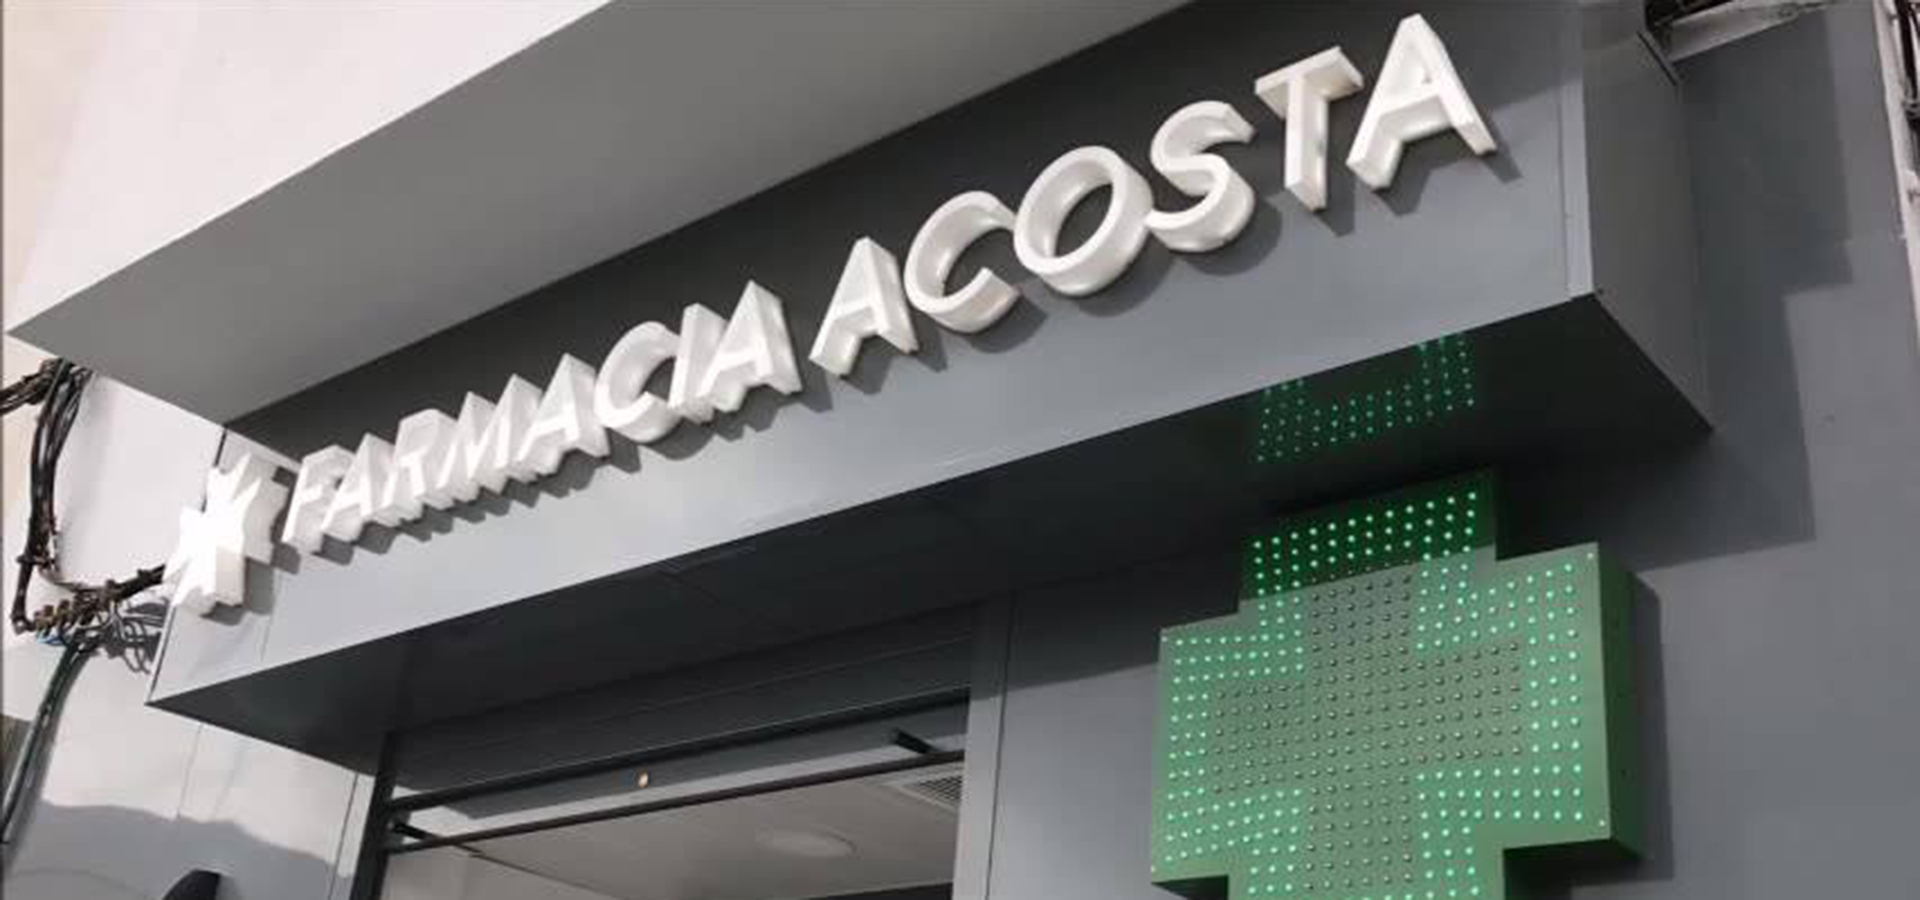 Farmacia Acosta